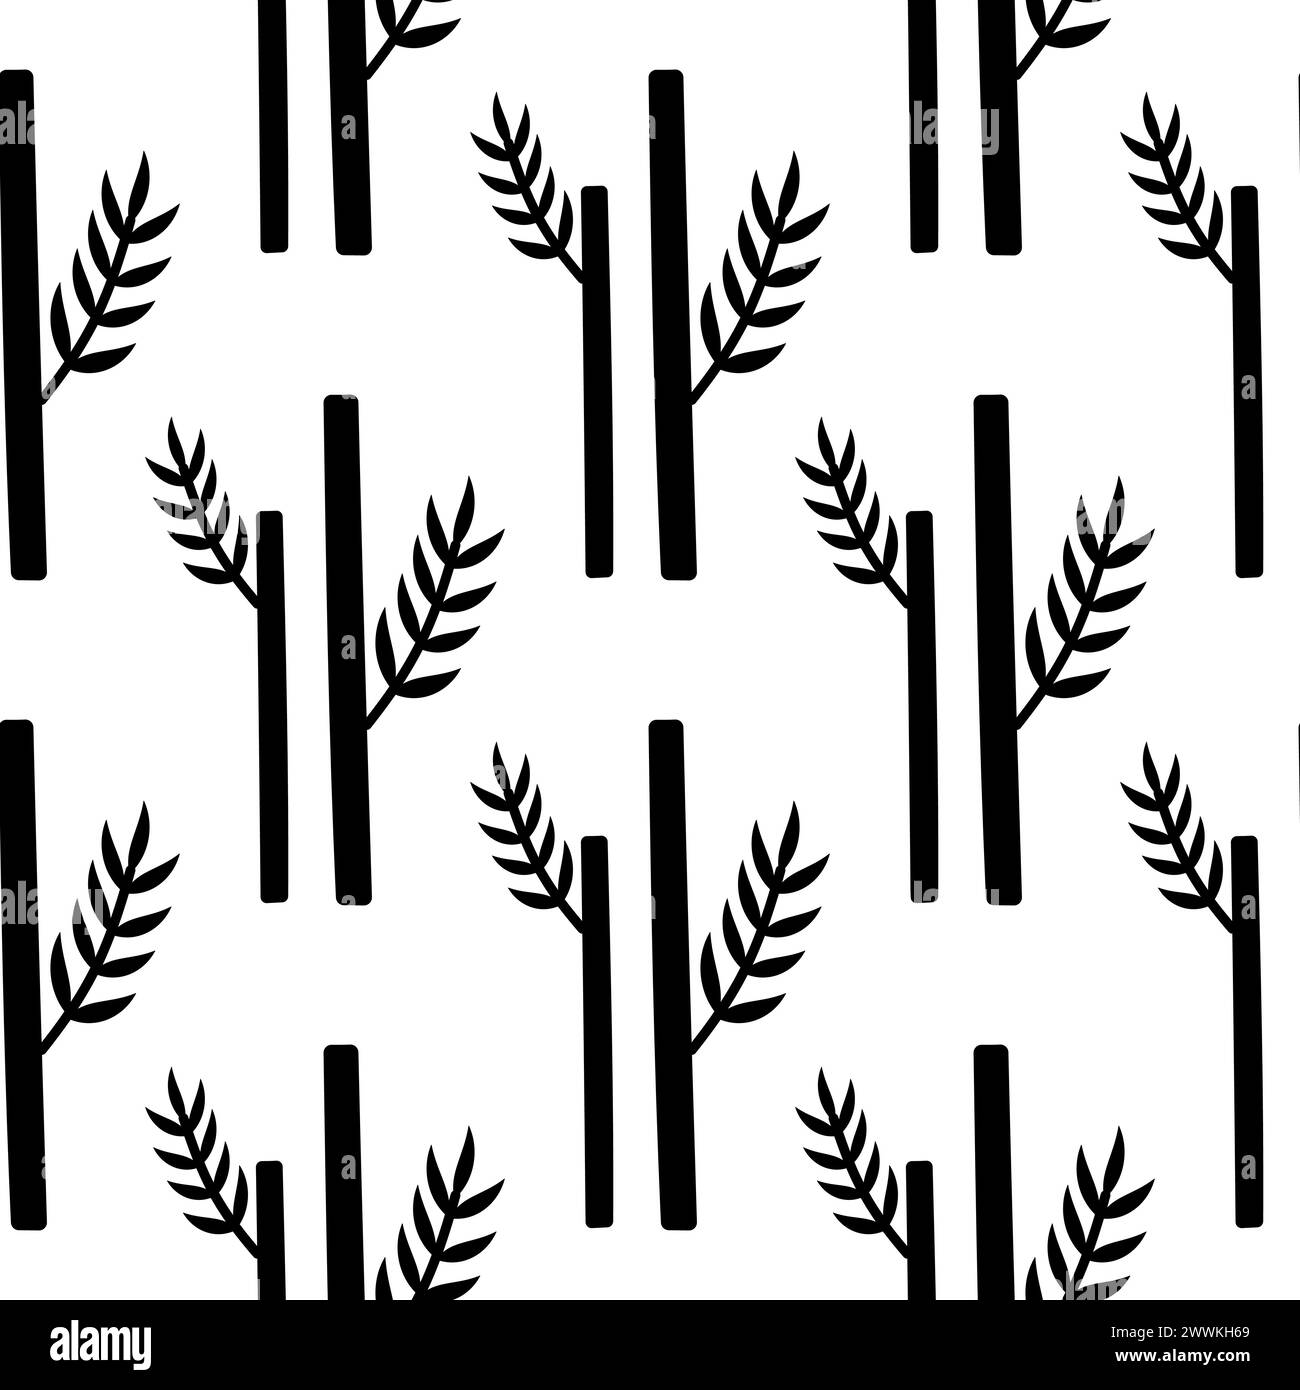 Bambusstamm mit Blättern. Nahtloses Muster. Schwarz-weiße Silhouette. Mehrjährige immergrüne Pflanze. Asiatische Baumaterialien. Chinesischer dekorativer Baum. Hand Stock Vektor